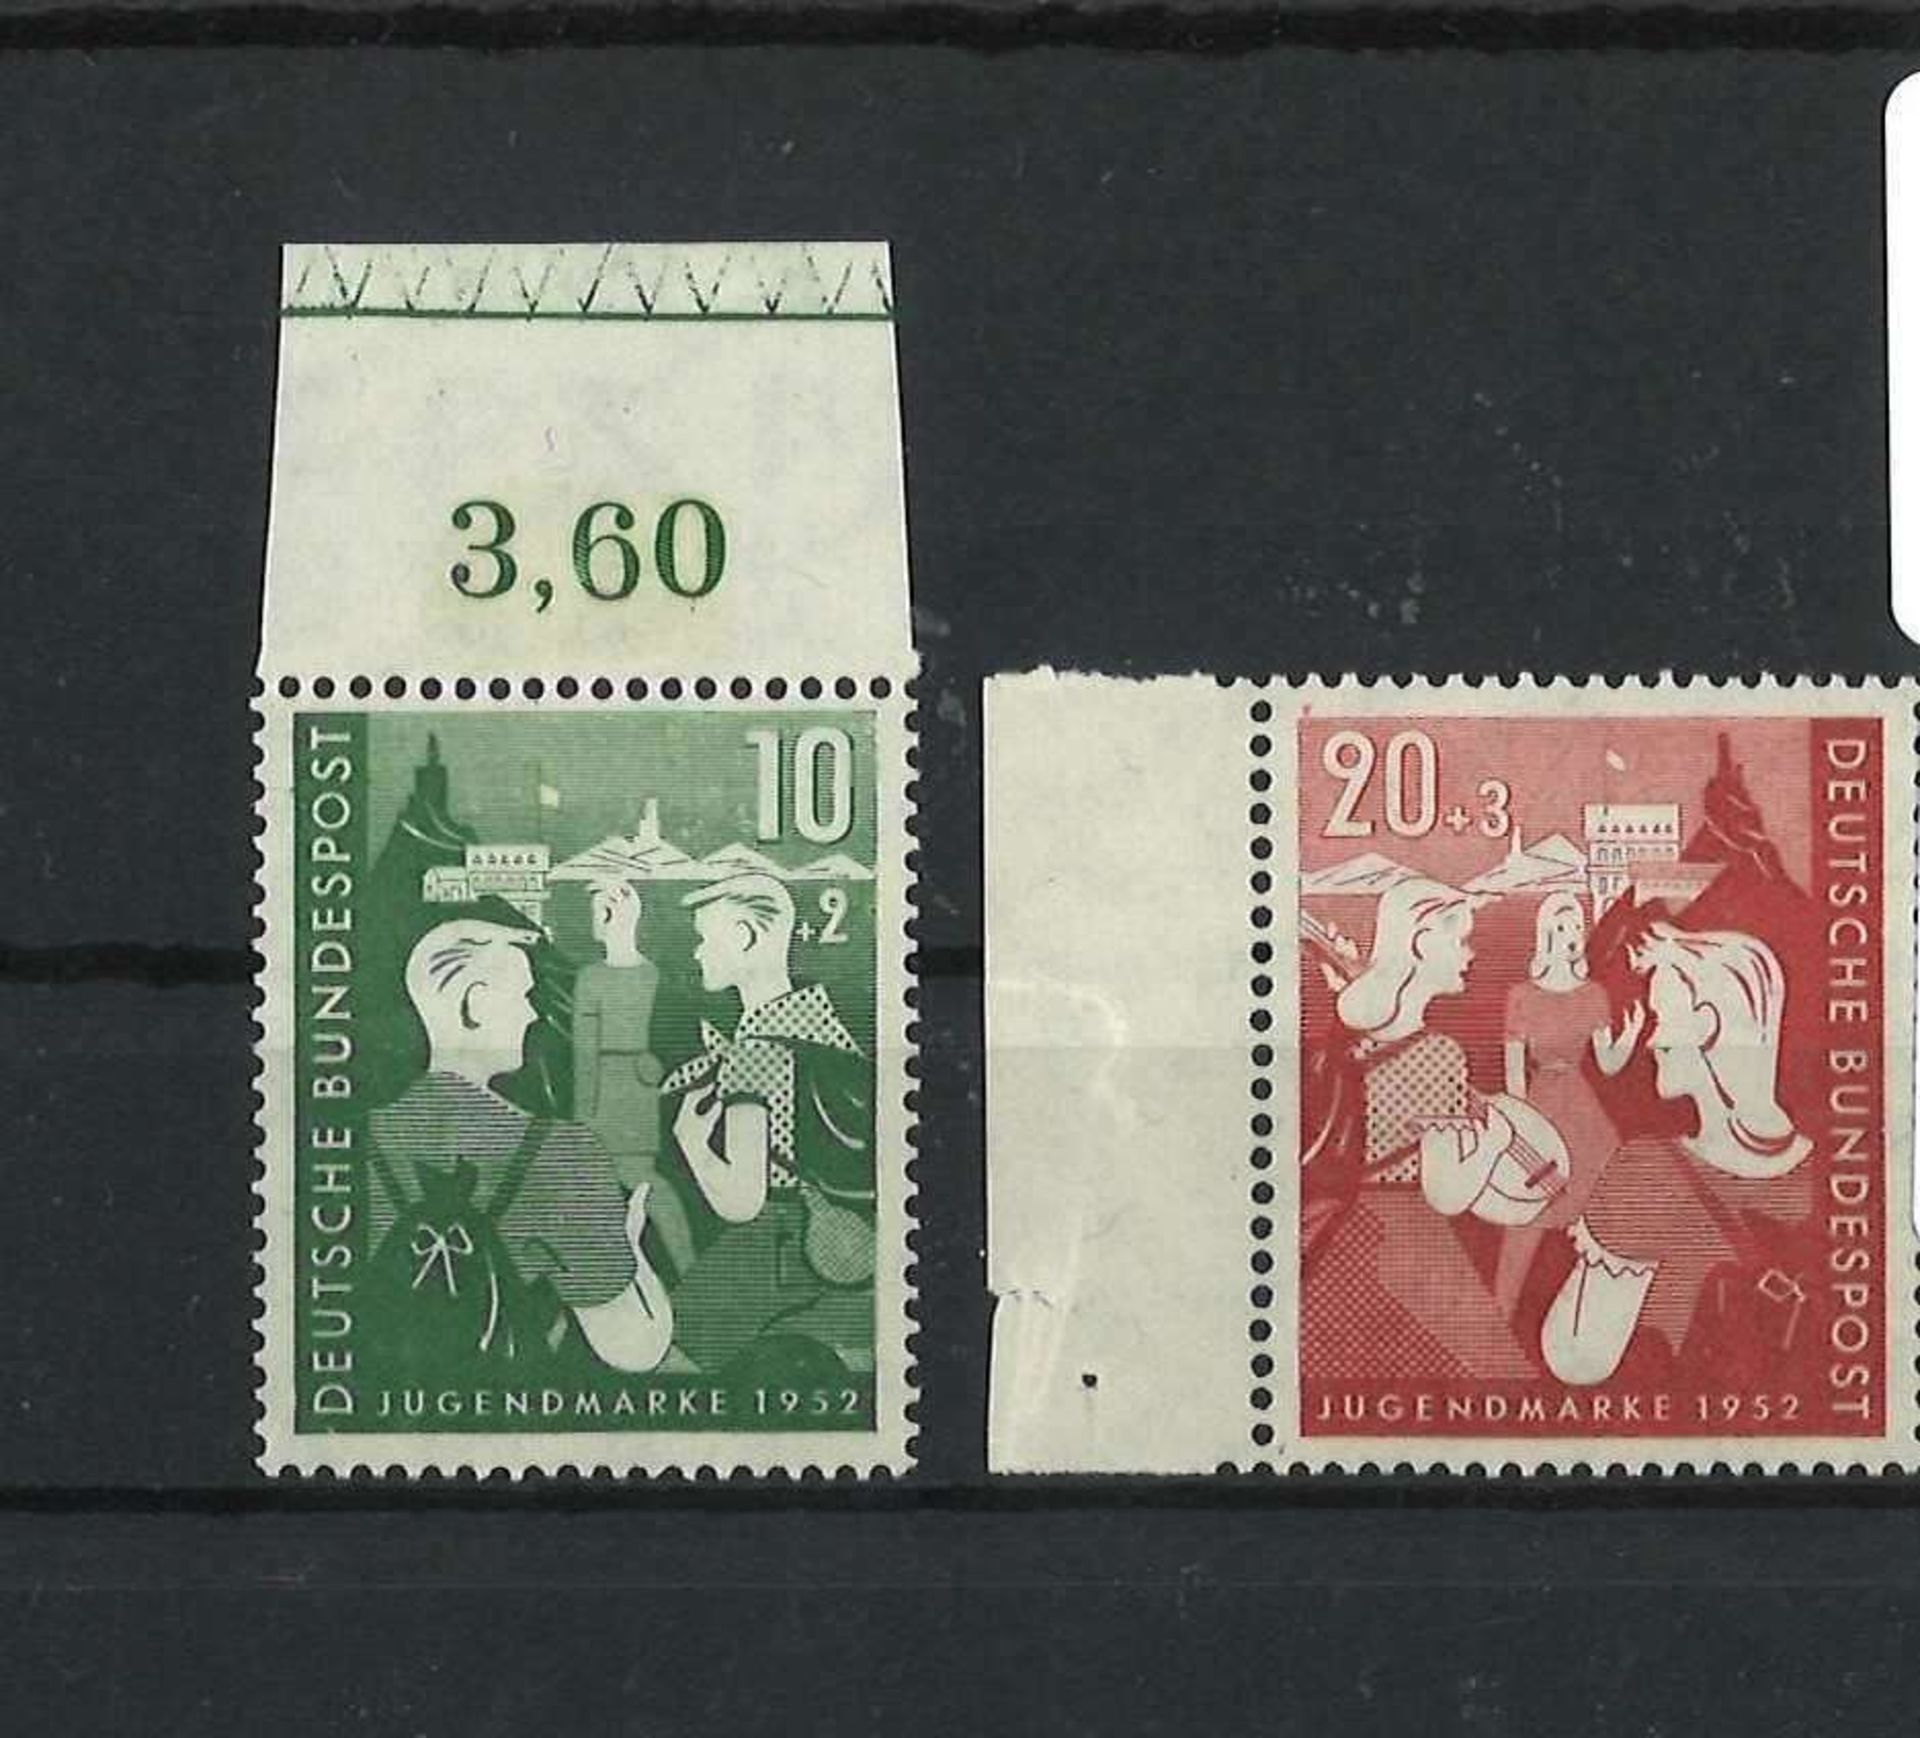 BRD 1952, Mi Nr. 153 - 154, Jugendplan Bundes, postfrischFRG 1952, Michel No. 153 - 154, youth